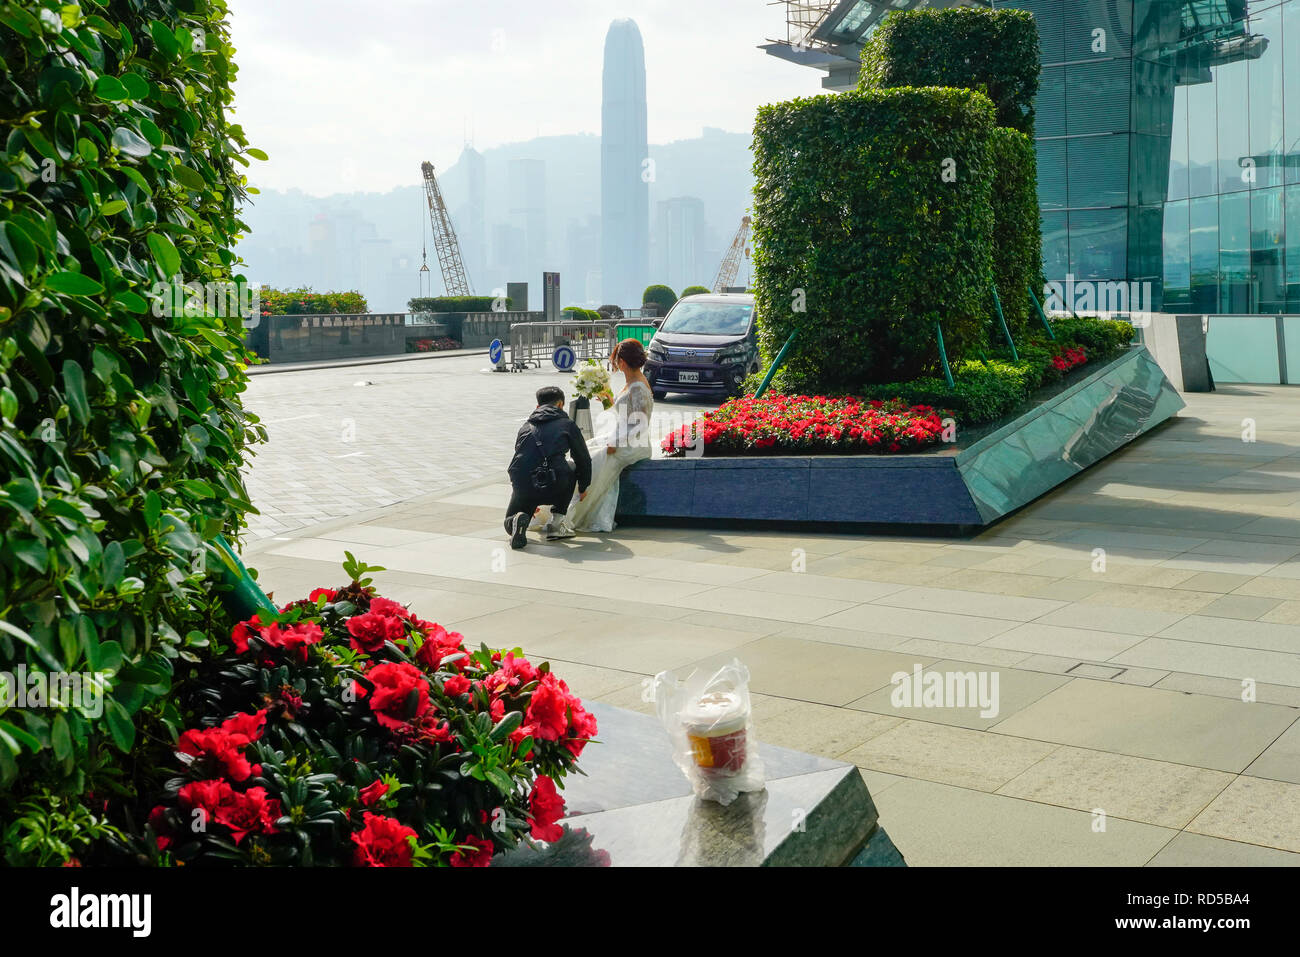 Fotografo fotografare la coppia del giorno di nozze presso la Union Square al di fuori del Ritz Carlton di Hong Kong, Cina. Foto Stock